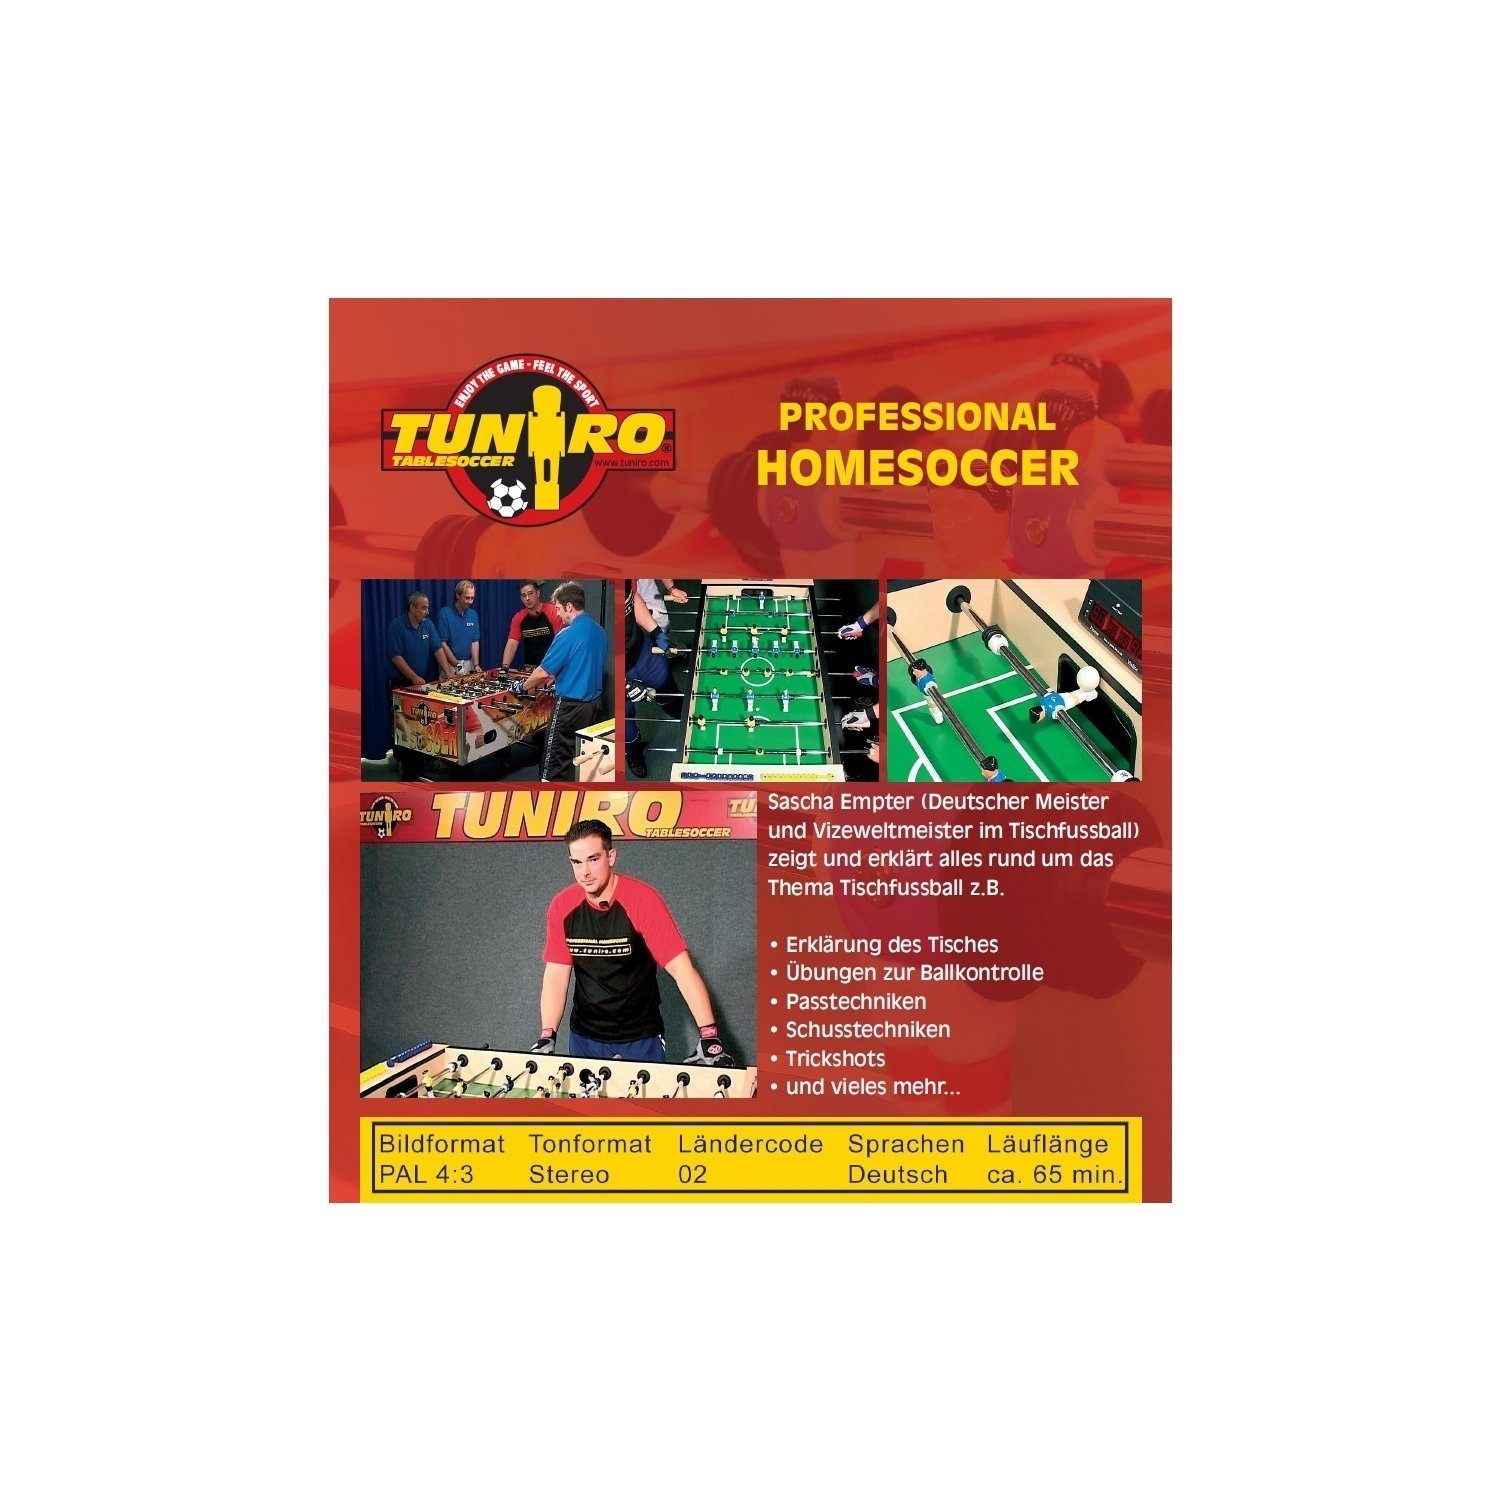 TUNIRO Kickertisch TUNIRO® Homesoccer Tischkicker, Kicker Tischfussball, Kickertisch Lern-DVD, Training Professional Tischkickerzubehör